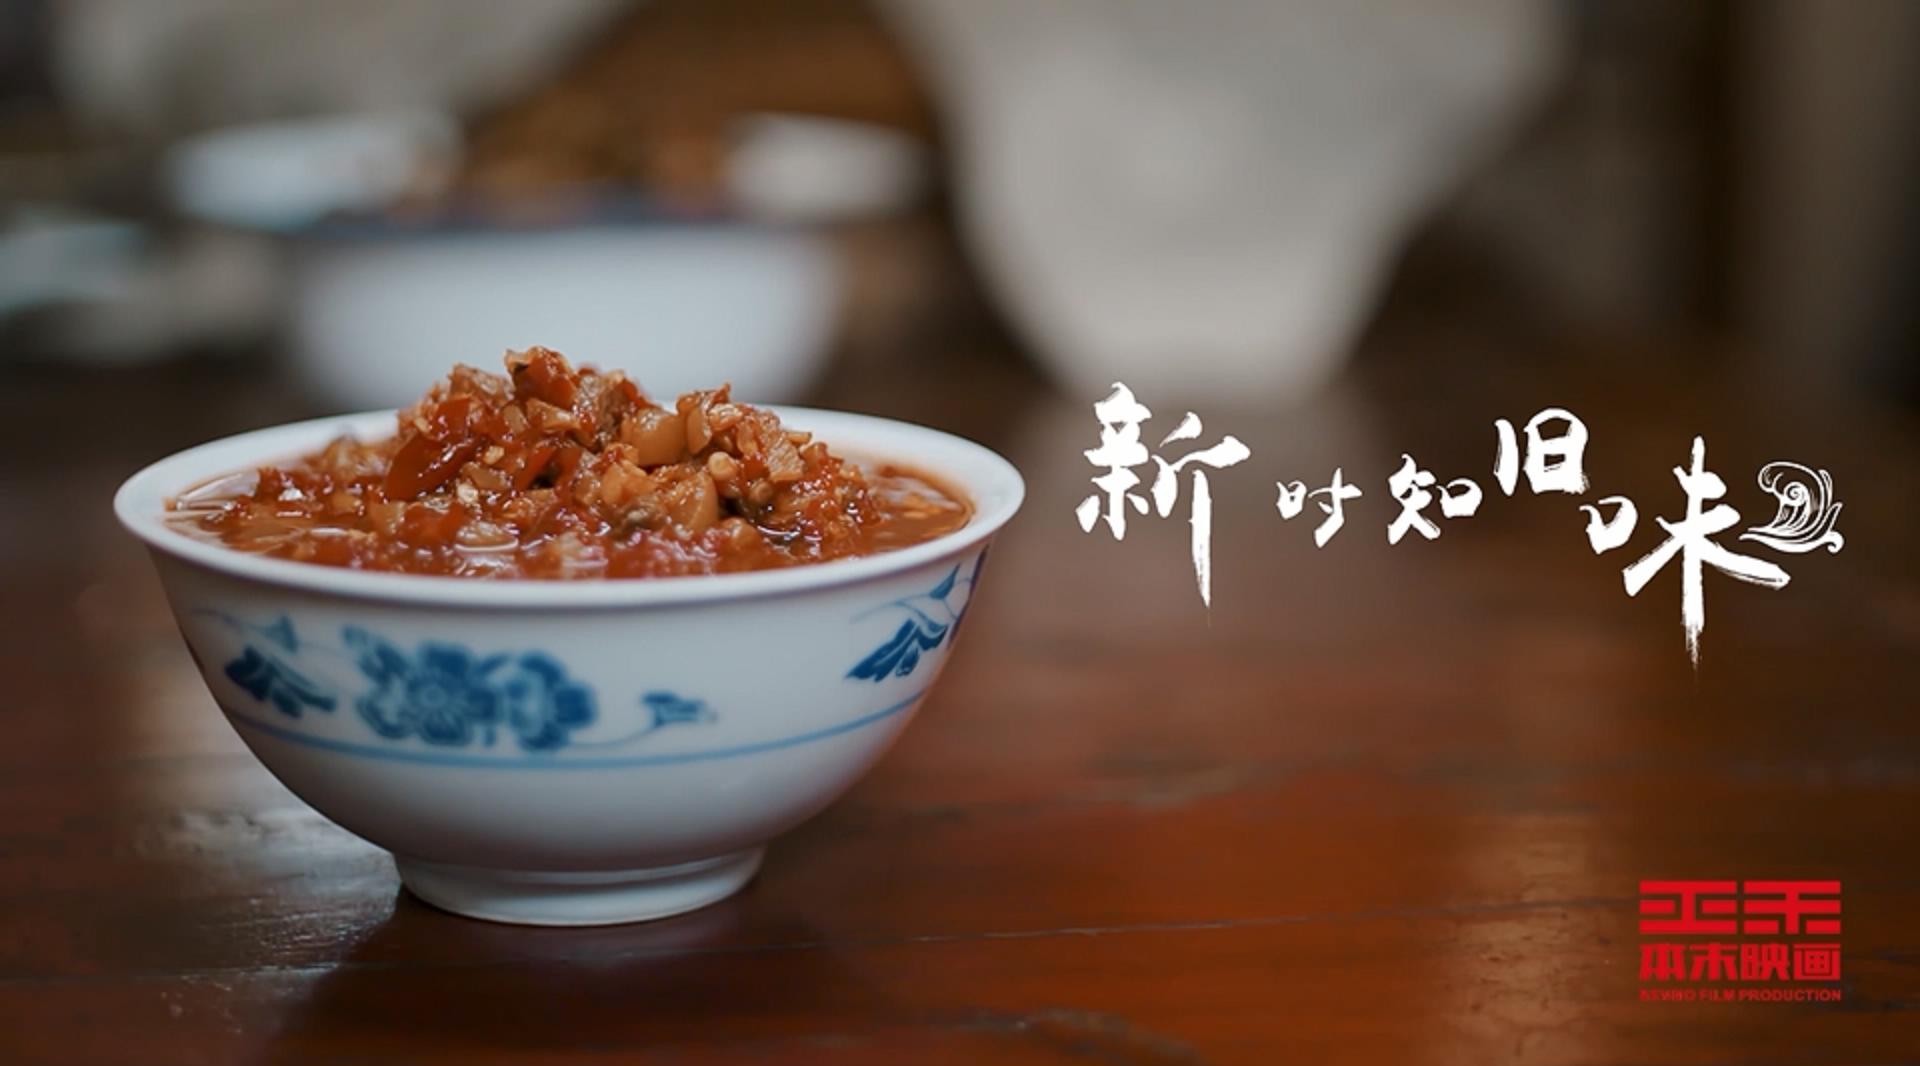 千岛湖旅游系列宣传片——《新时知旧味》 